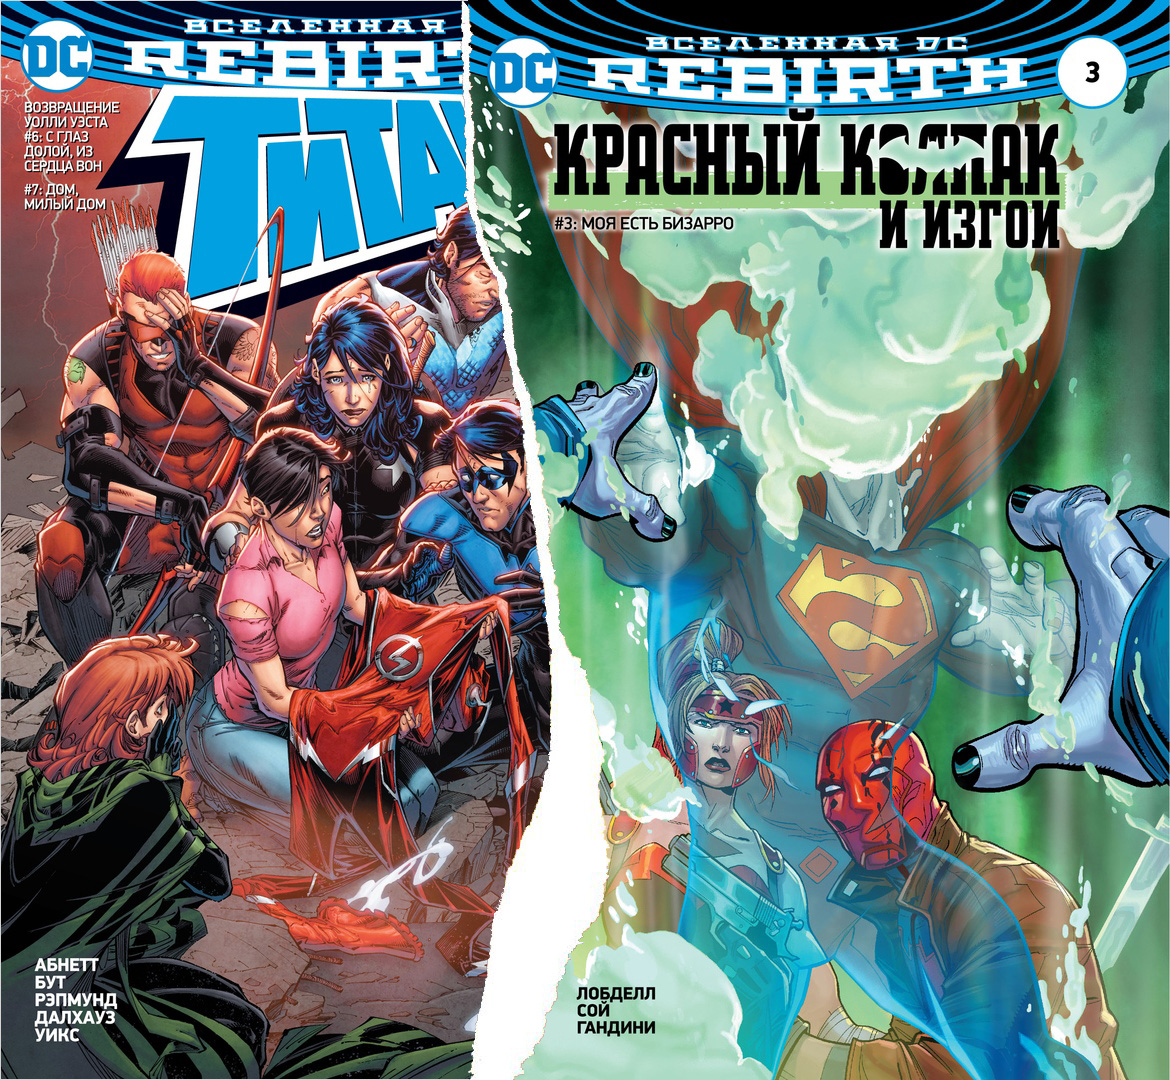 Комикс Вселенная DC Rebirth: Титаны. Выпуск №6-7 / Красный колпак и Изгои. Выпуск №3 от 1С Интерес